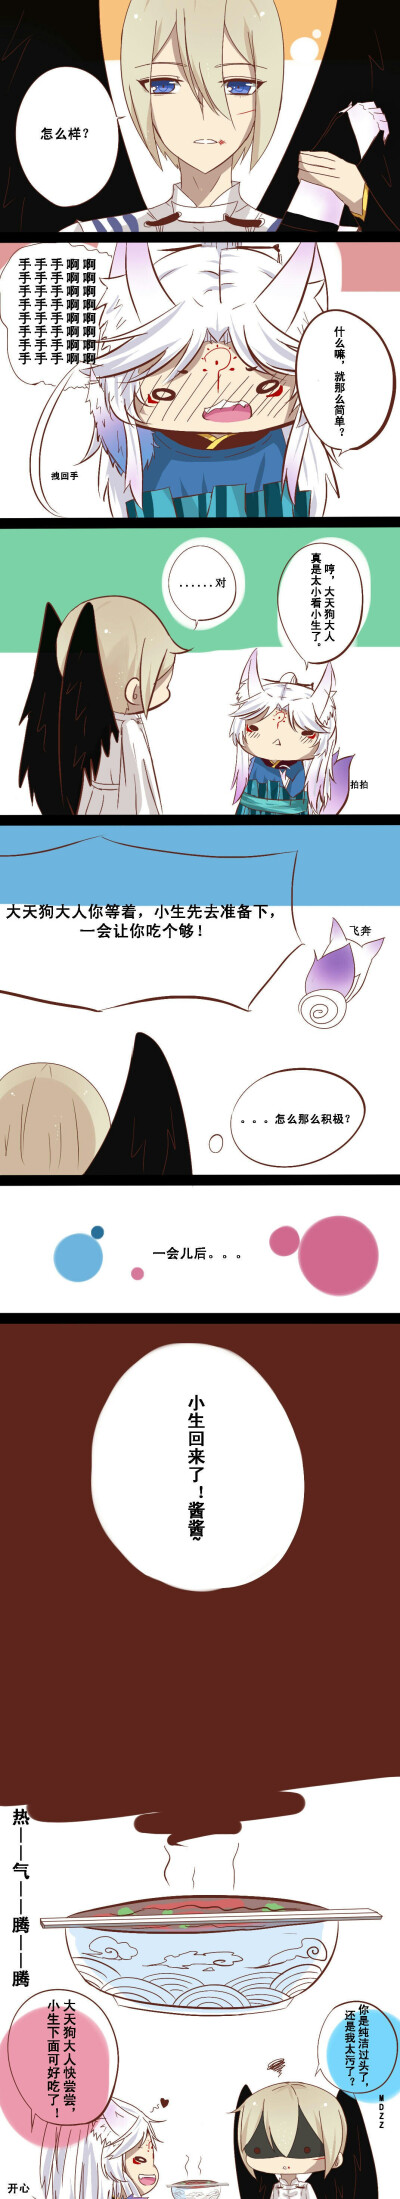 阴阳师#同人漫画(看来是我太污了>_>)【2】